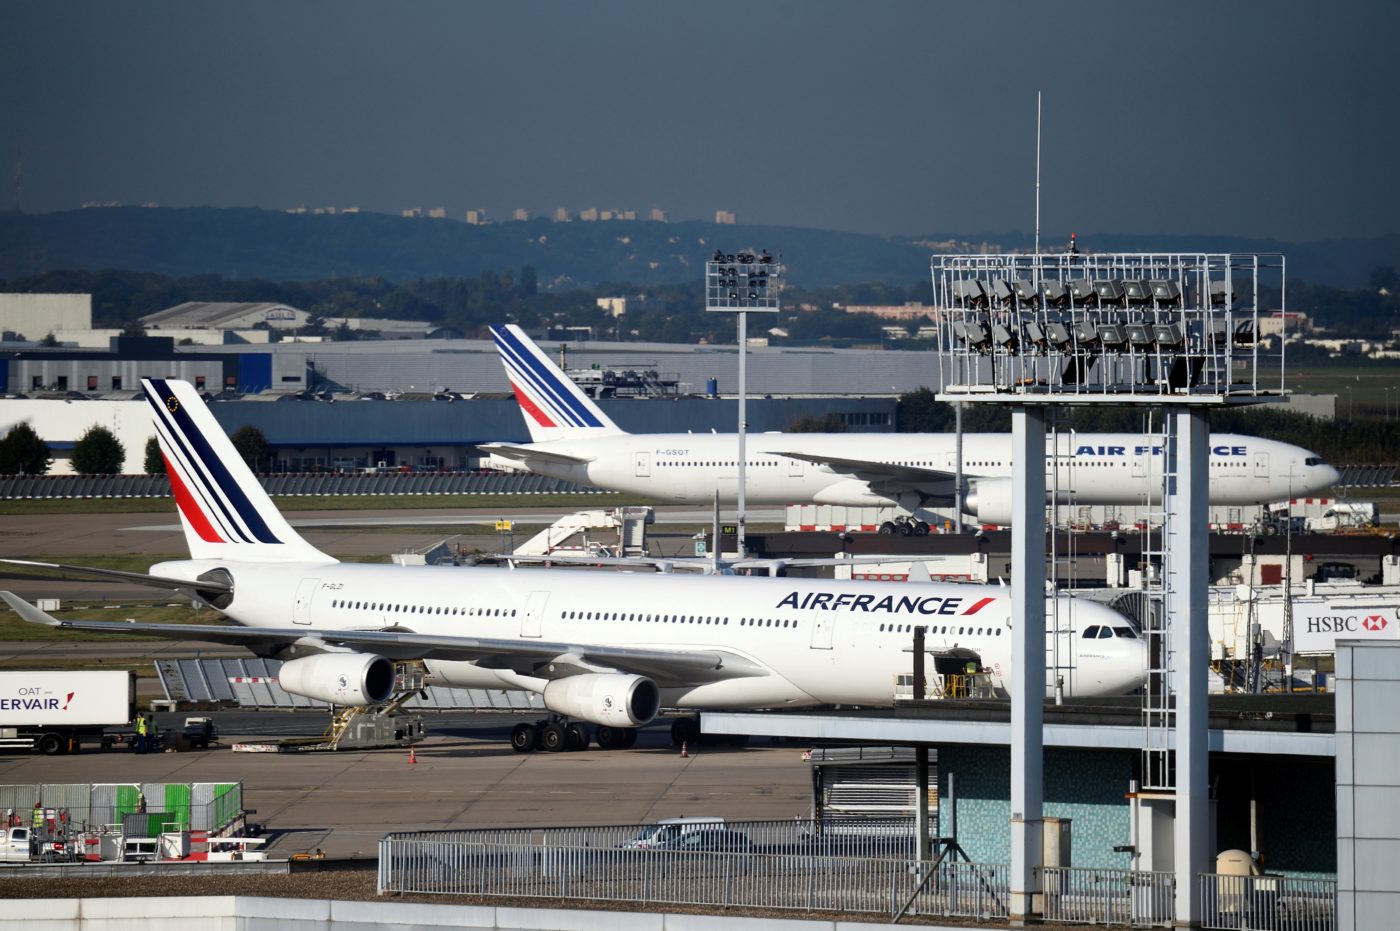 Ingyen utat ad az Air France a Notre-Dame újjáépítésében segítőknek